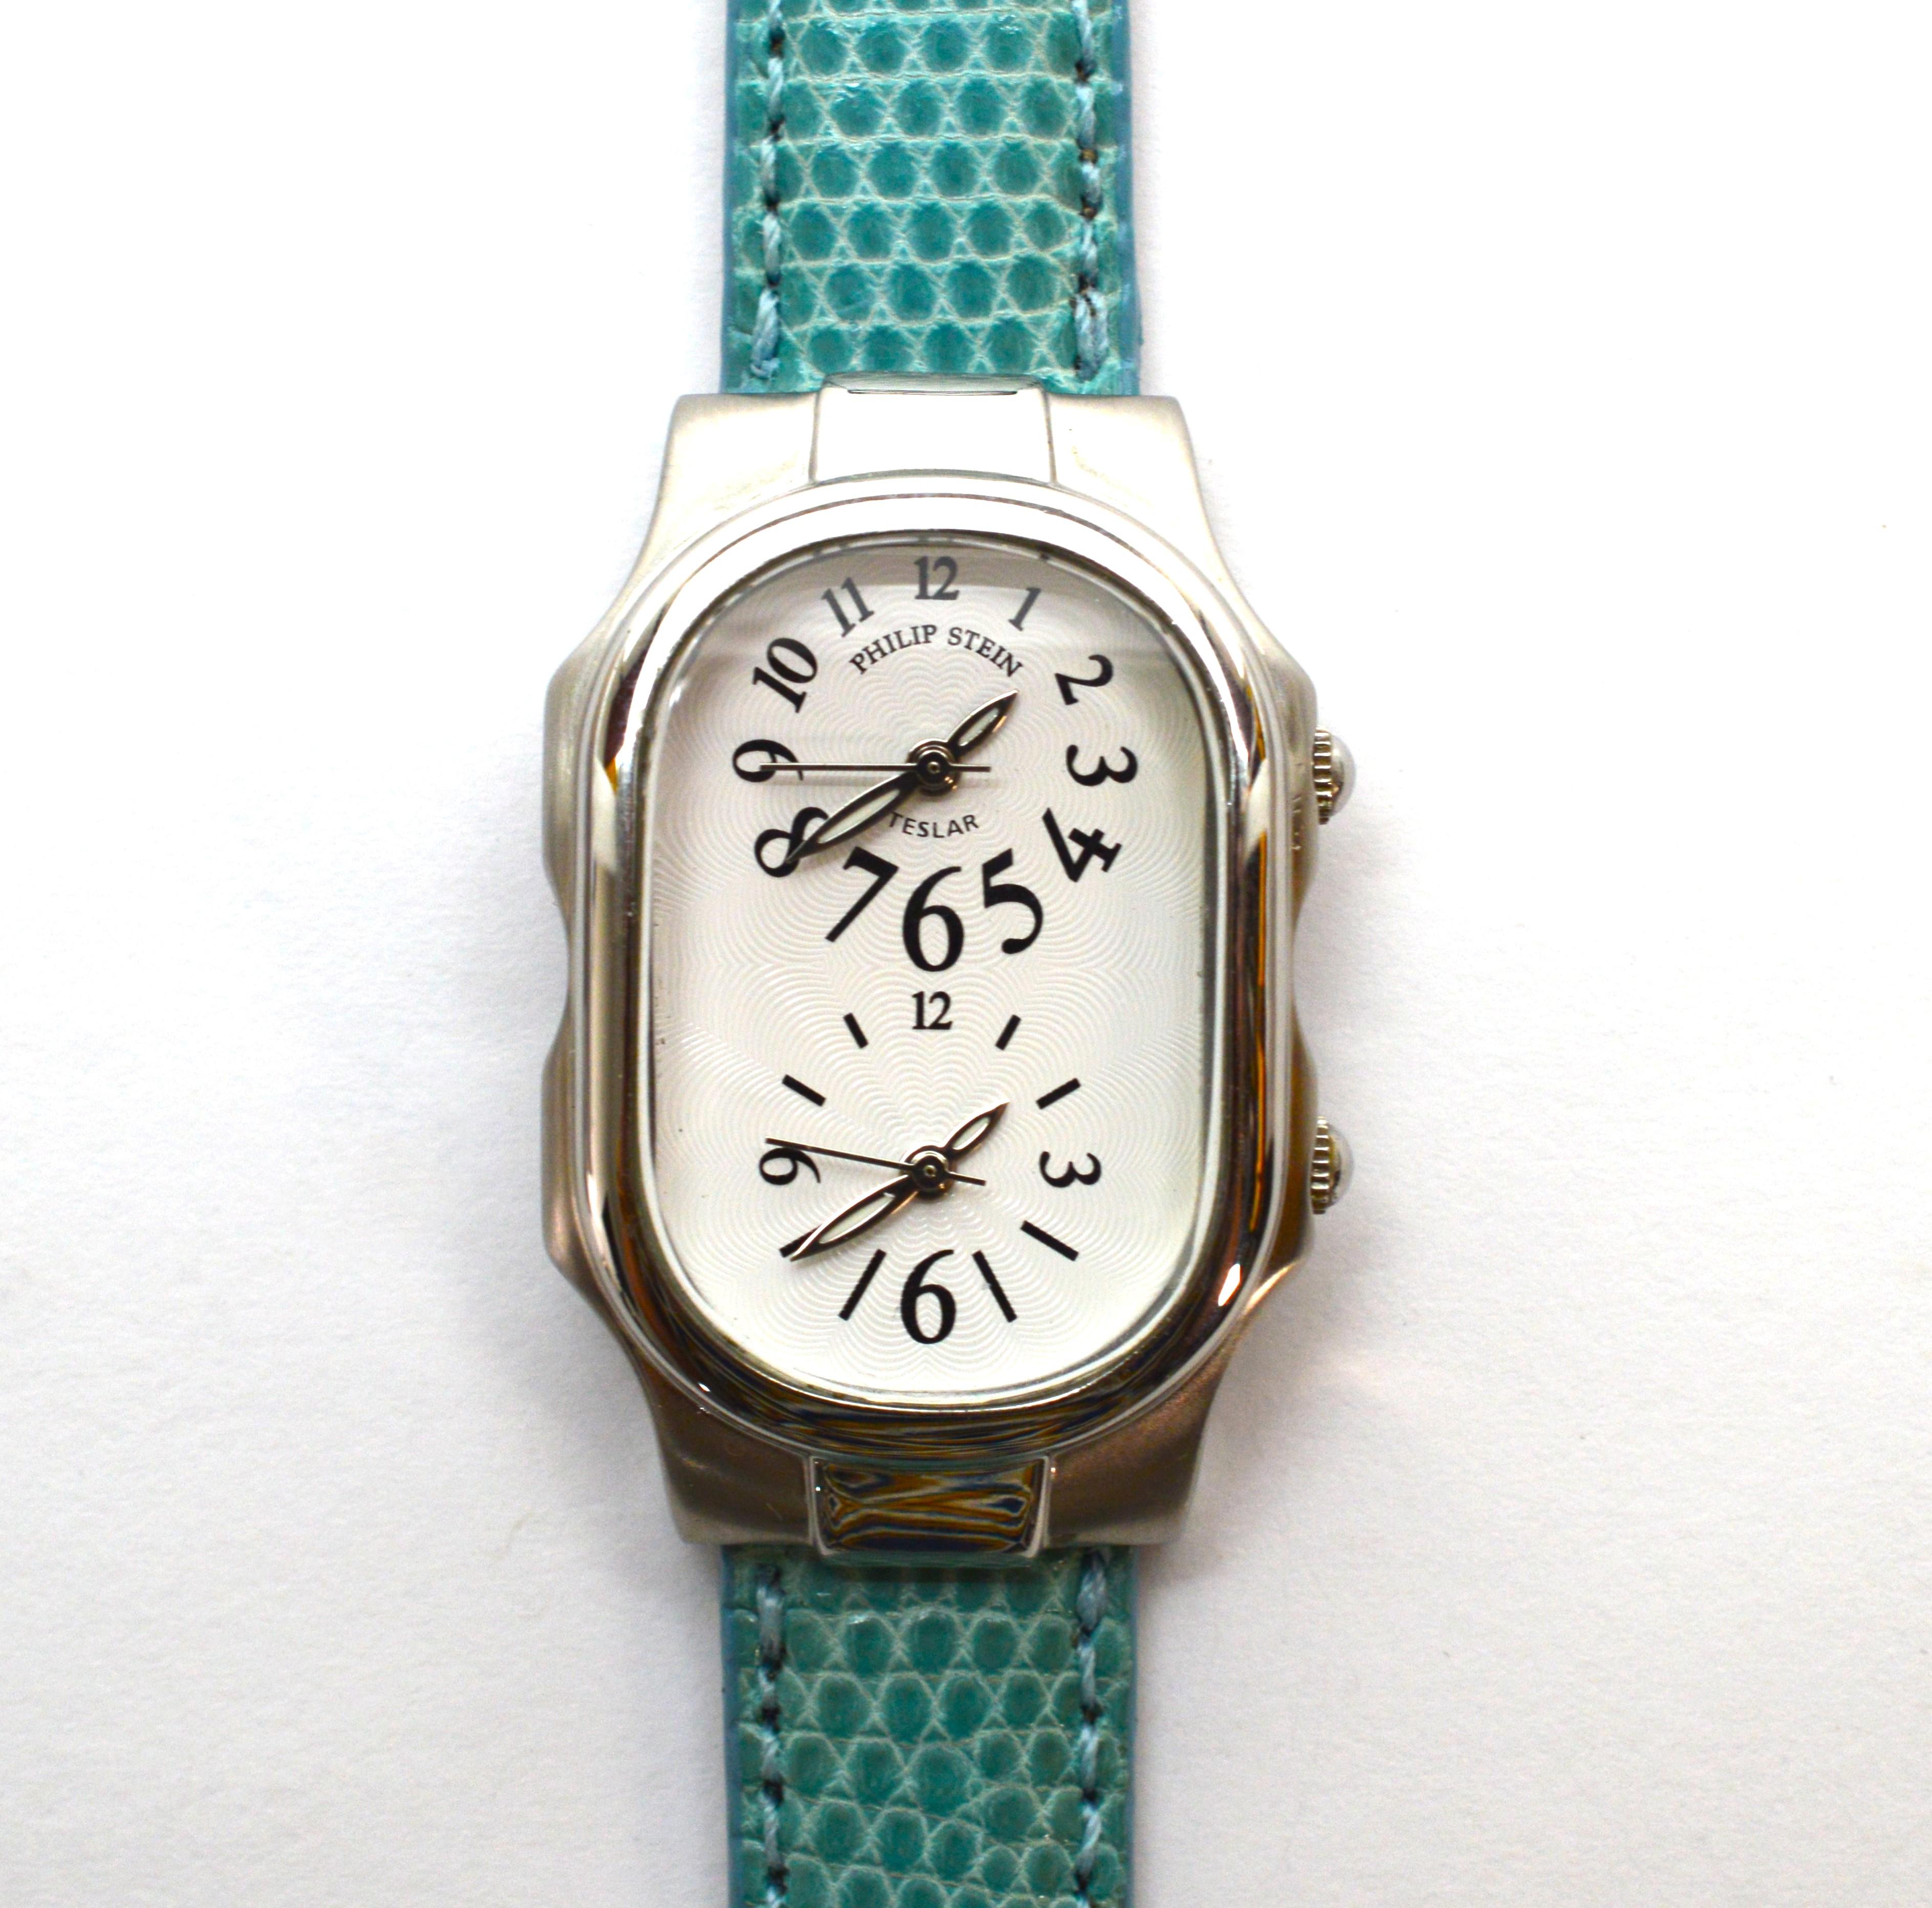 philip stein teslar watch price